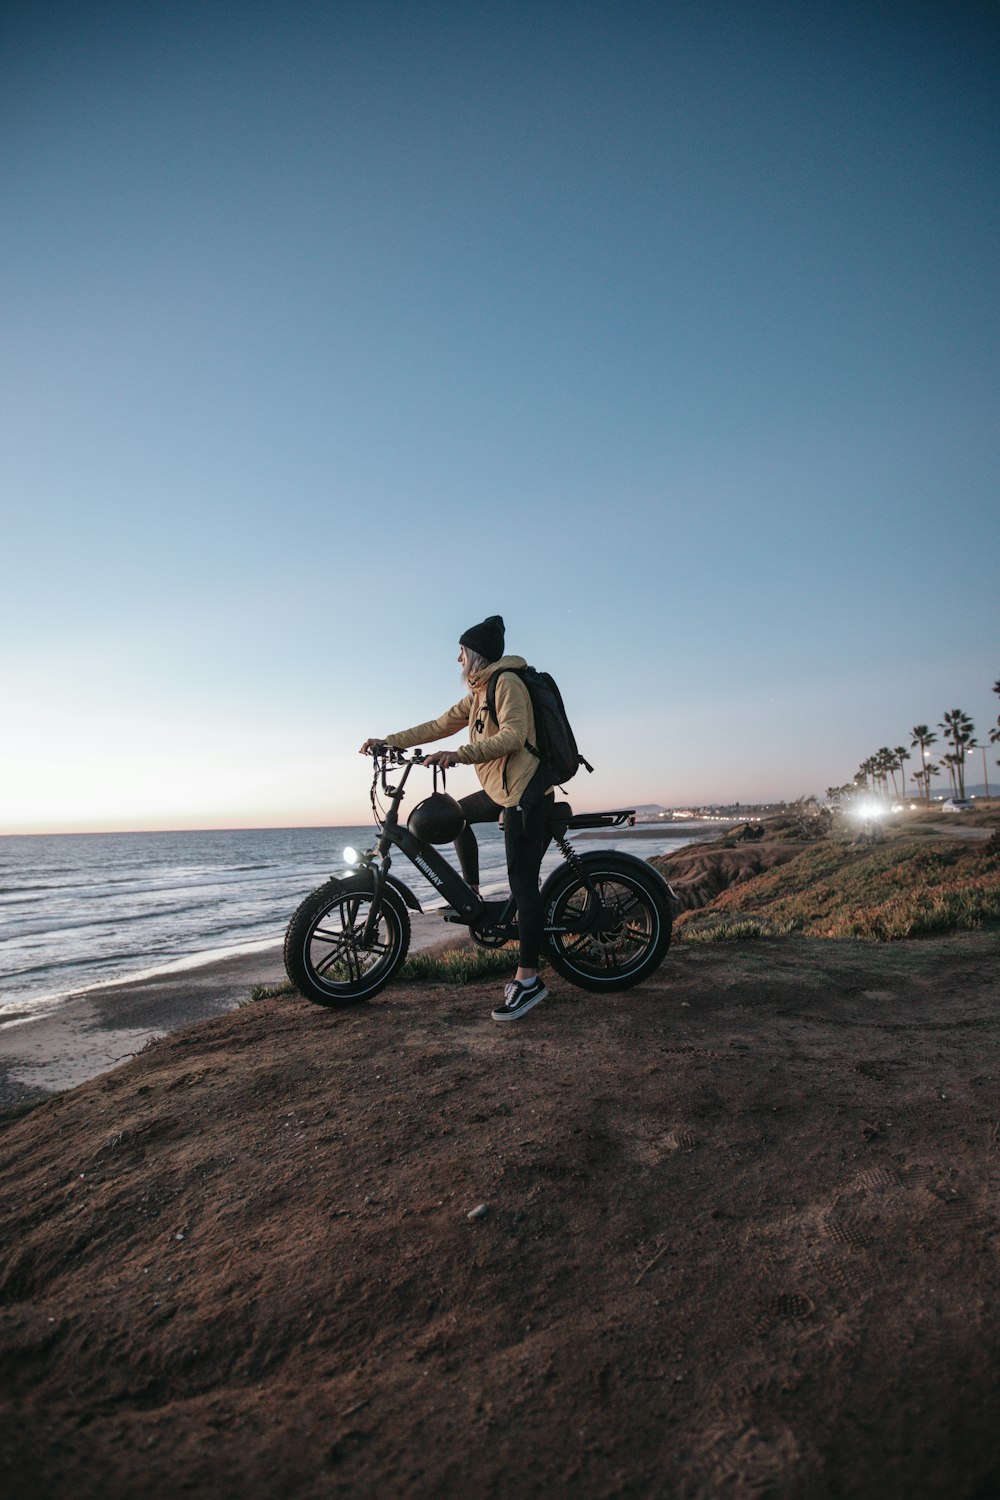 homme en veste marron roulant sur une moto noire sur du sable brun près du plan d’eau pendant